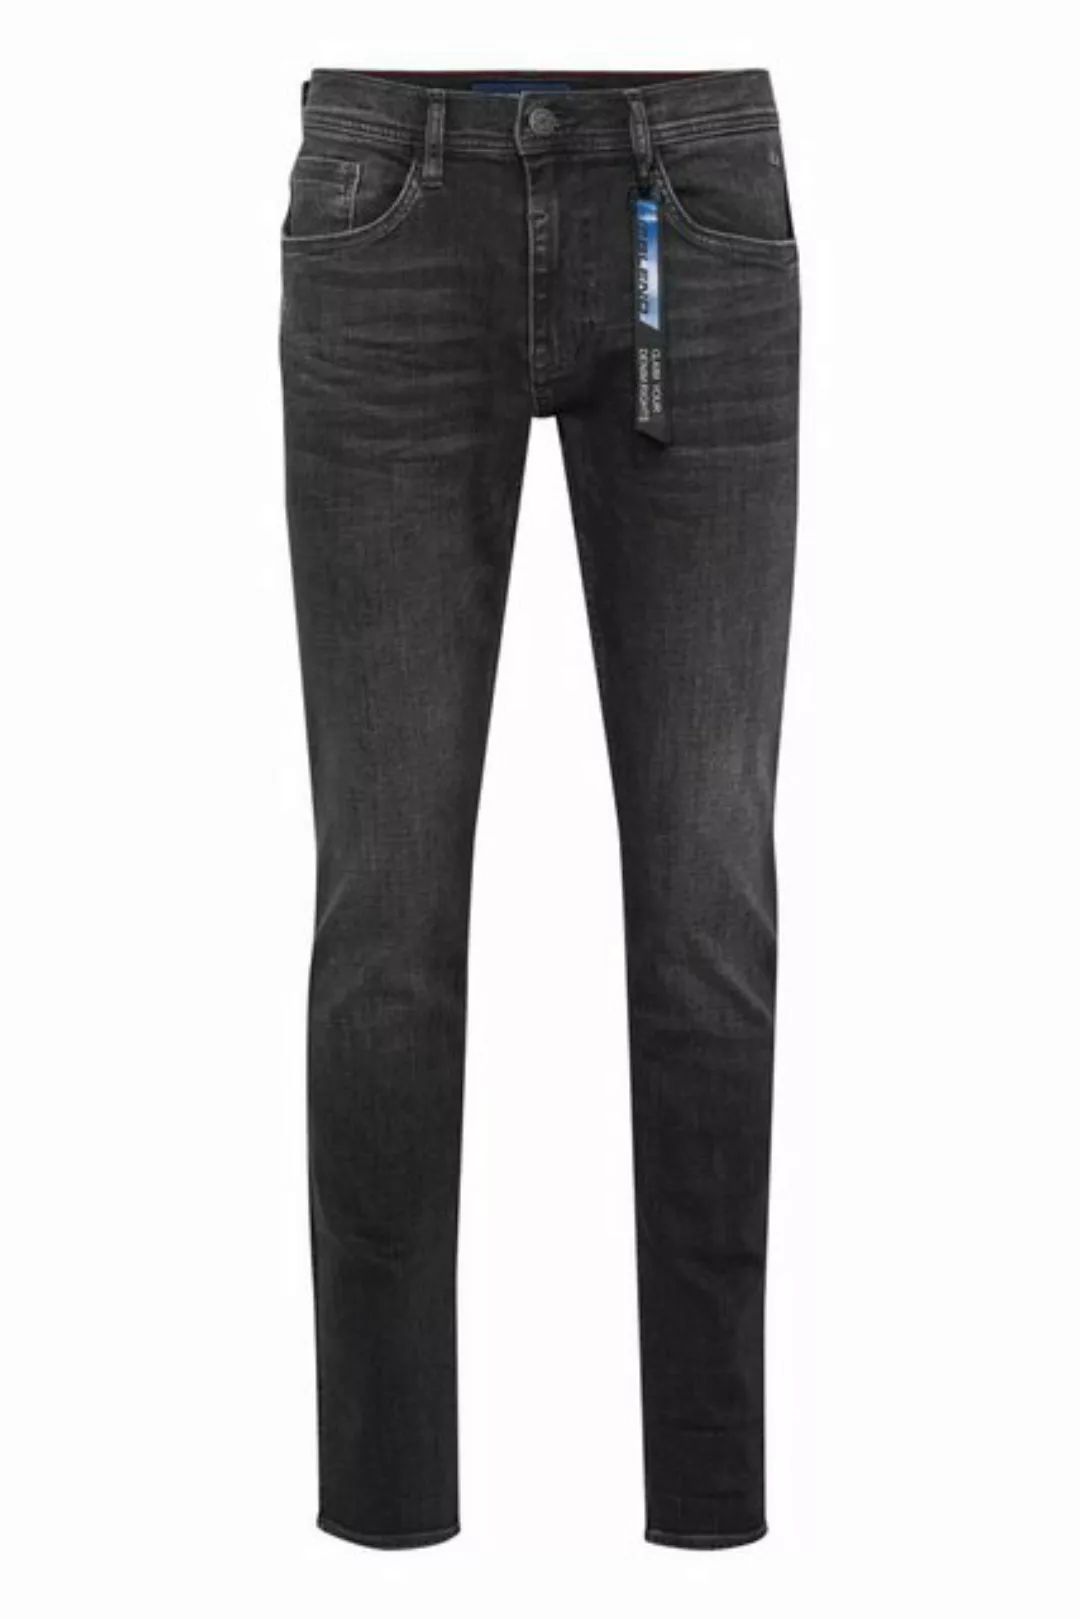 Blend 5-Pocket-Jeans BLEND JEANS TWISTER denim grey used 20712391.200296 - günstig online kaufen